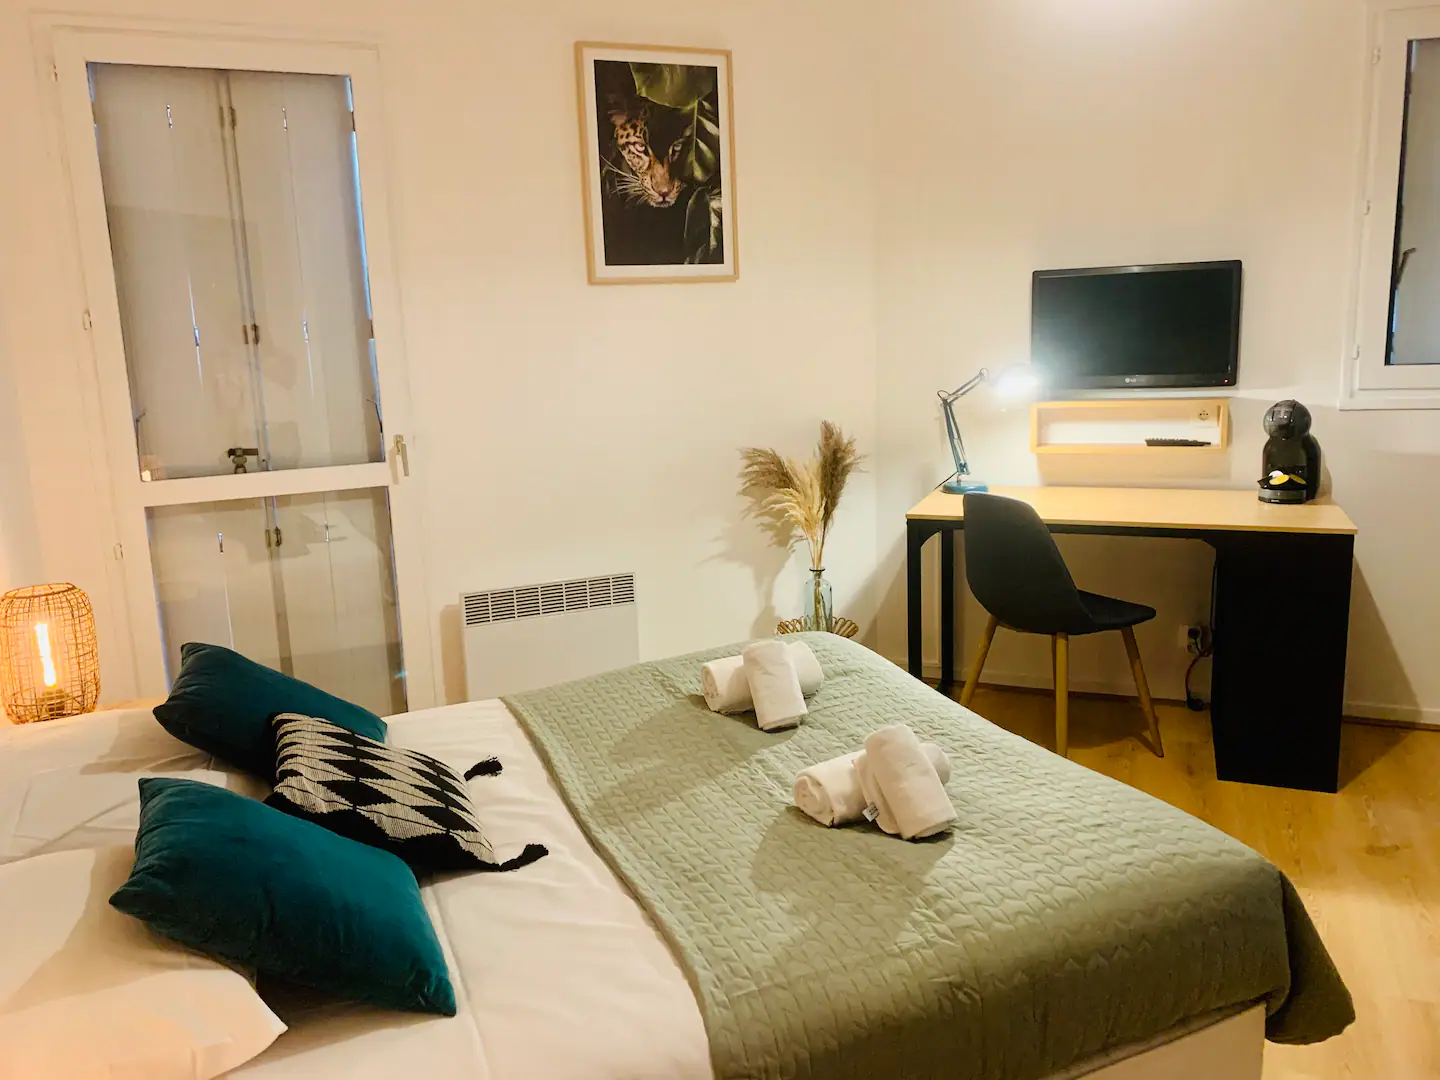 rennes-host-airbnb-conciergerie-le-wild-appartement-bord-vilaine-alphonce-guerin-3